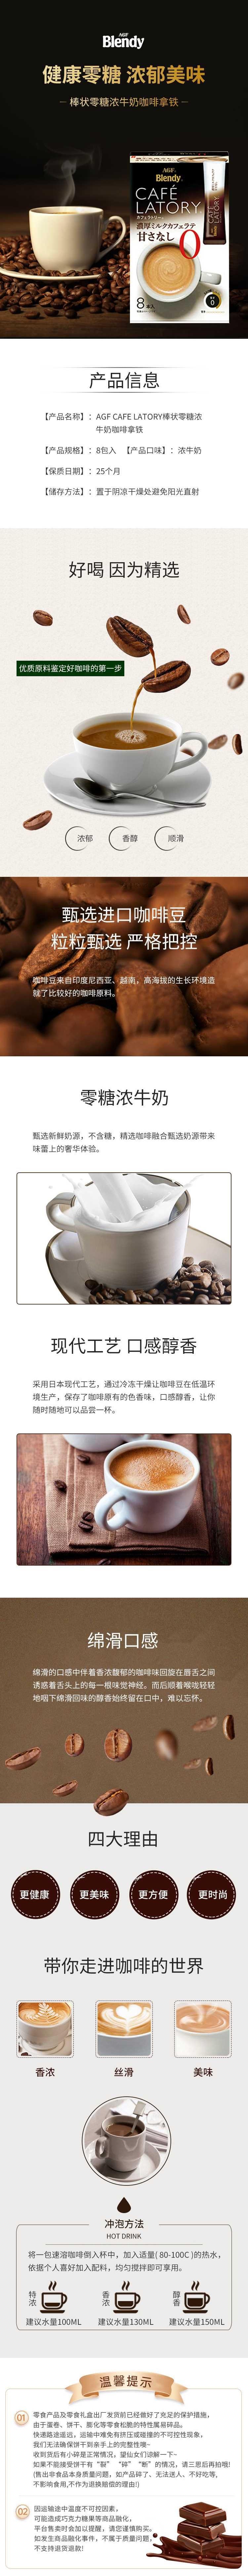 【日本直邮】AGF BLENDY咖啡 醇厚无糖牛奶拿铁 速溶咖啡 无糖不怕胖 8袋装